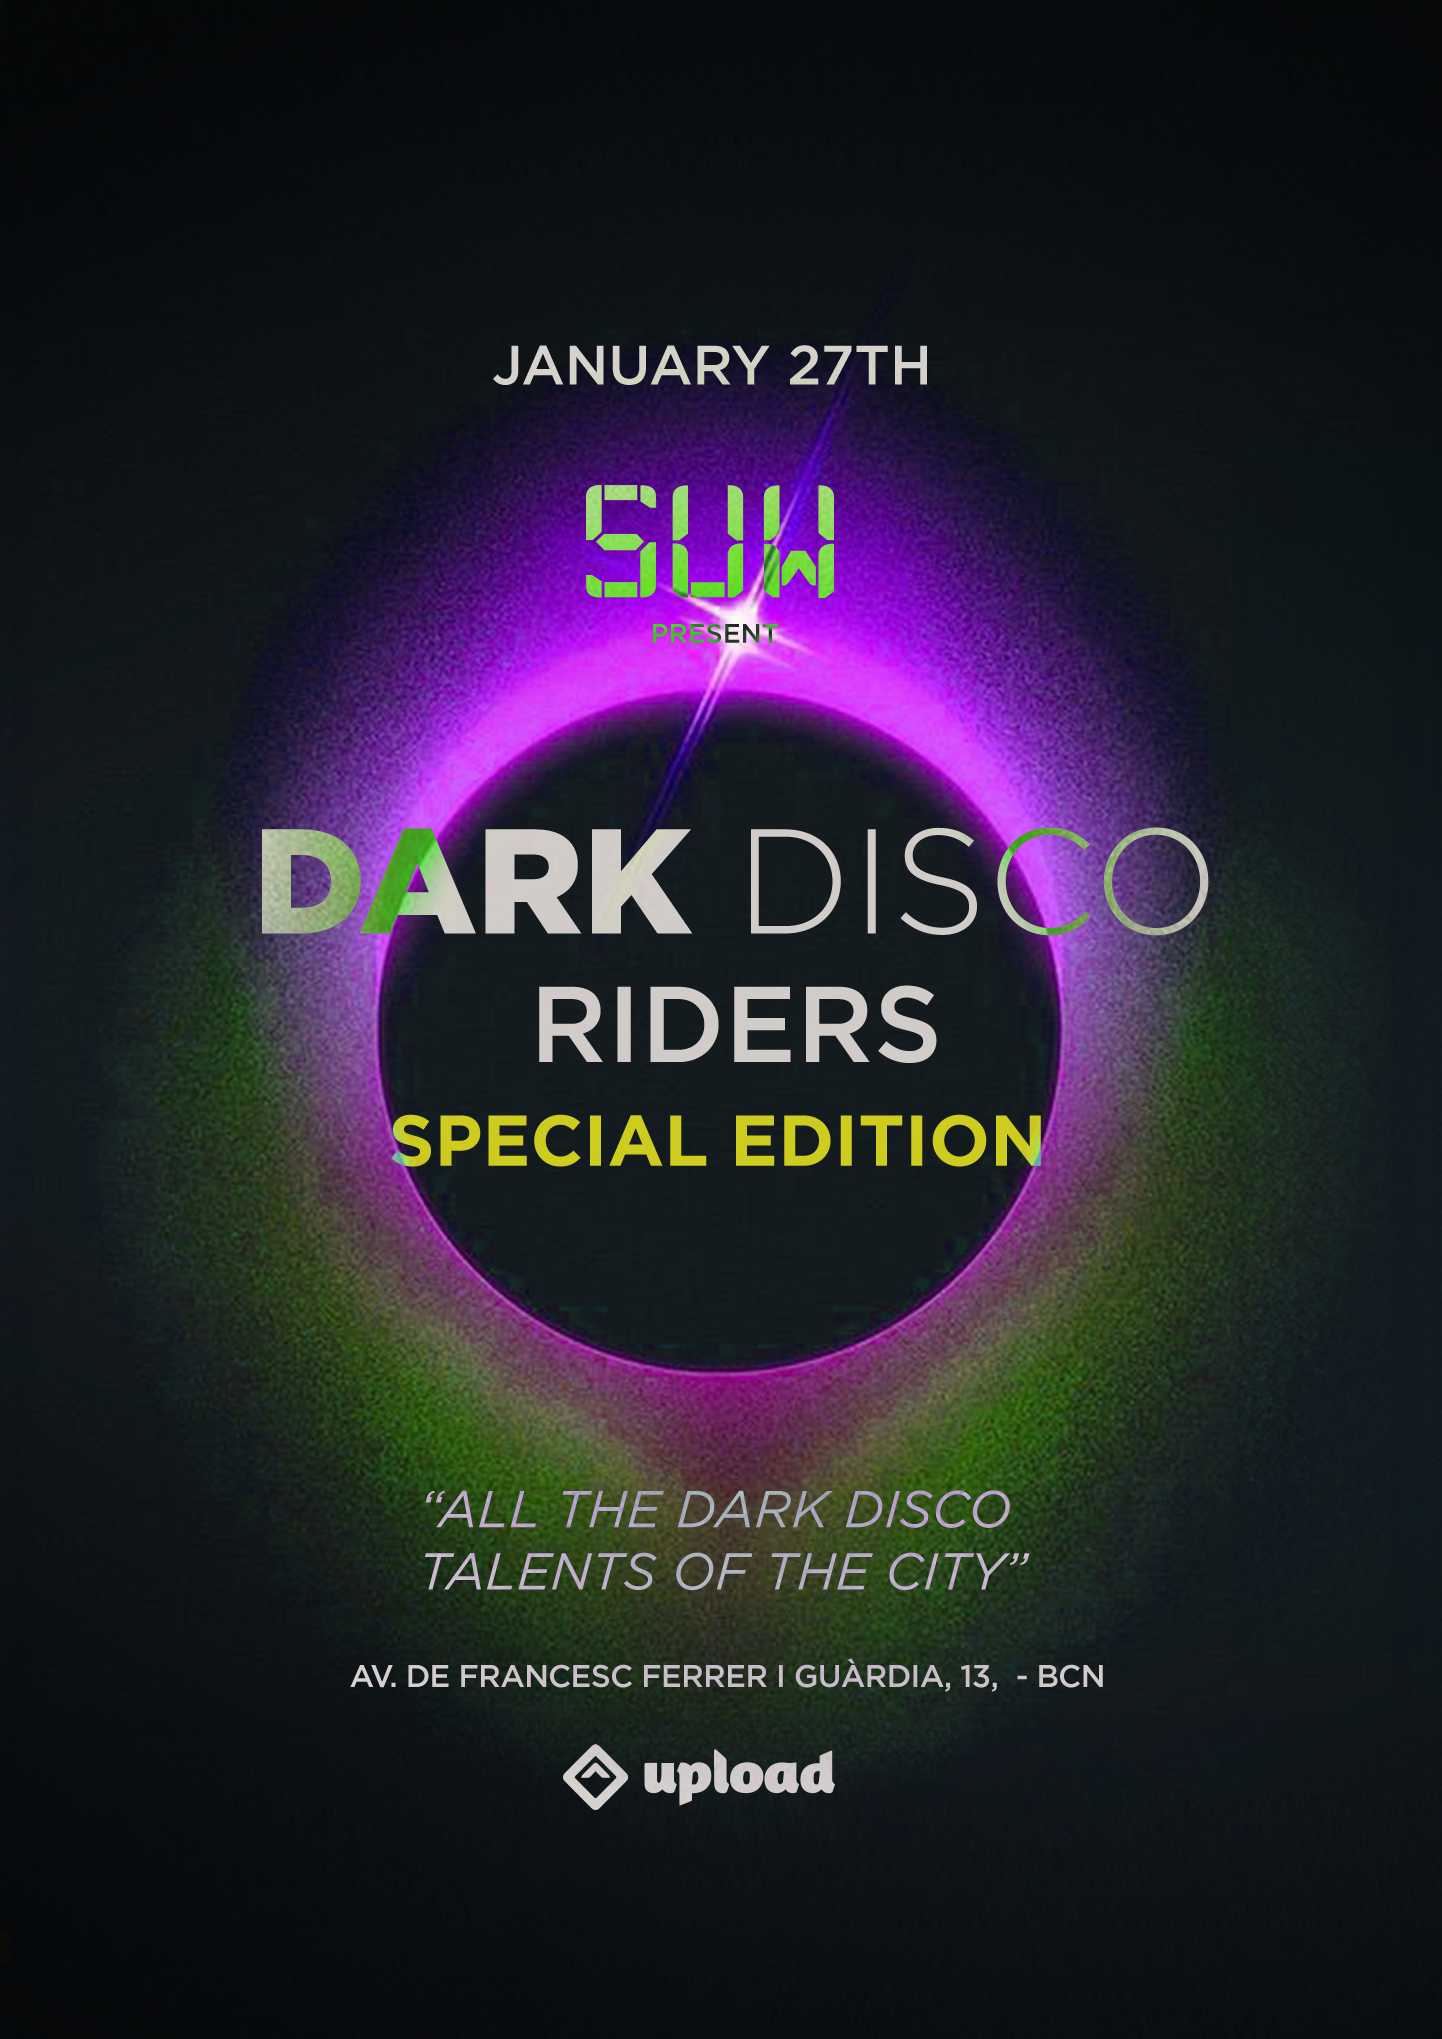 SUW DarkDisco Riders Special Edition - フライヤー表